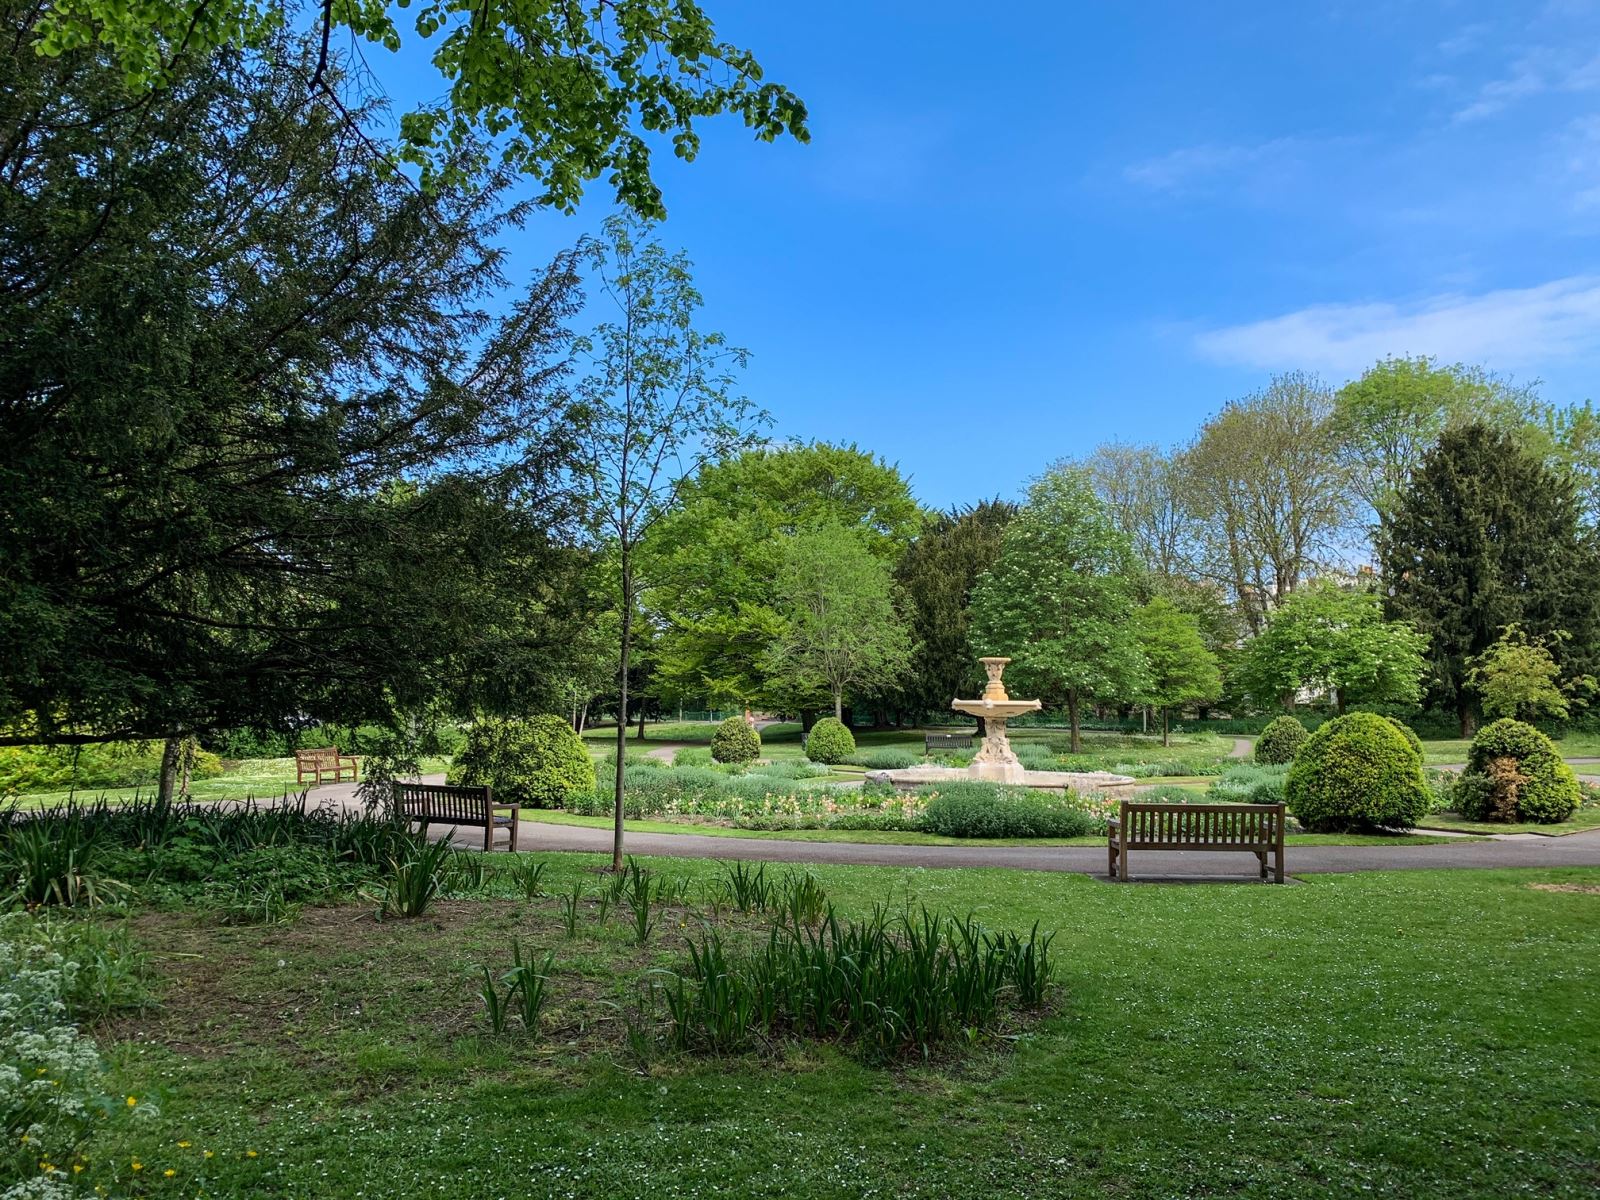 Best picnic spots in Cheltenham - Sandford park